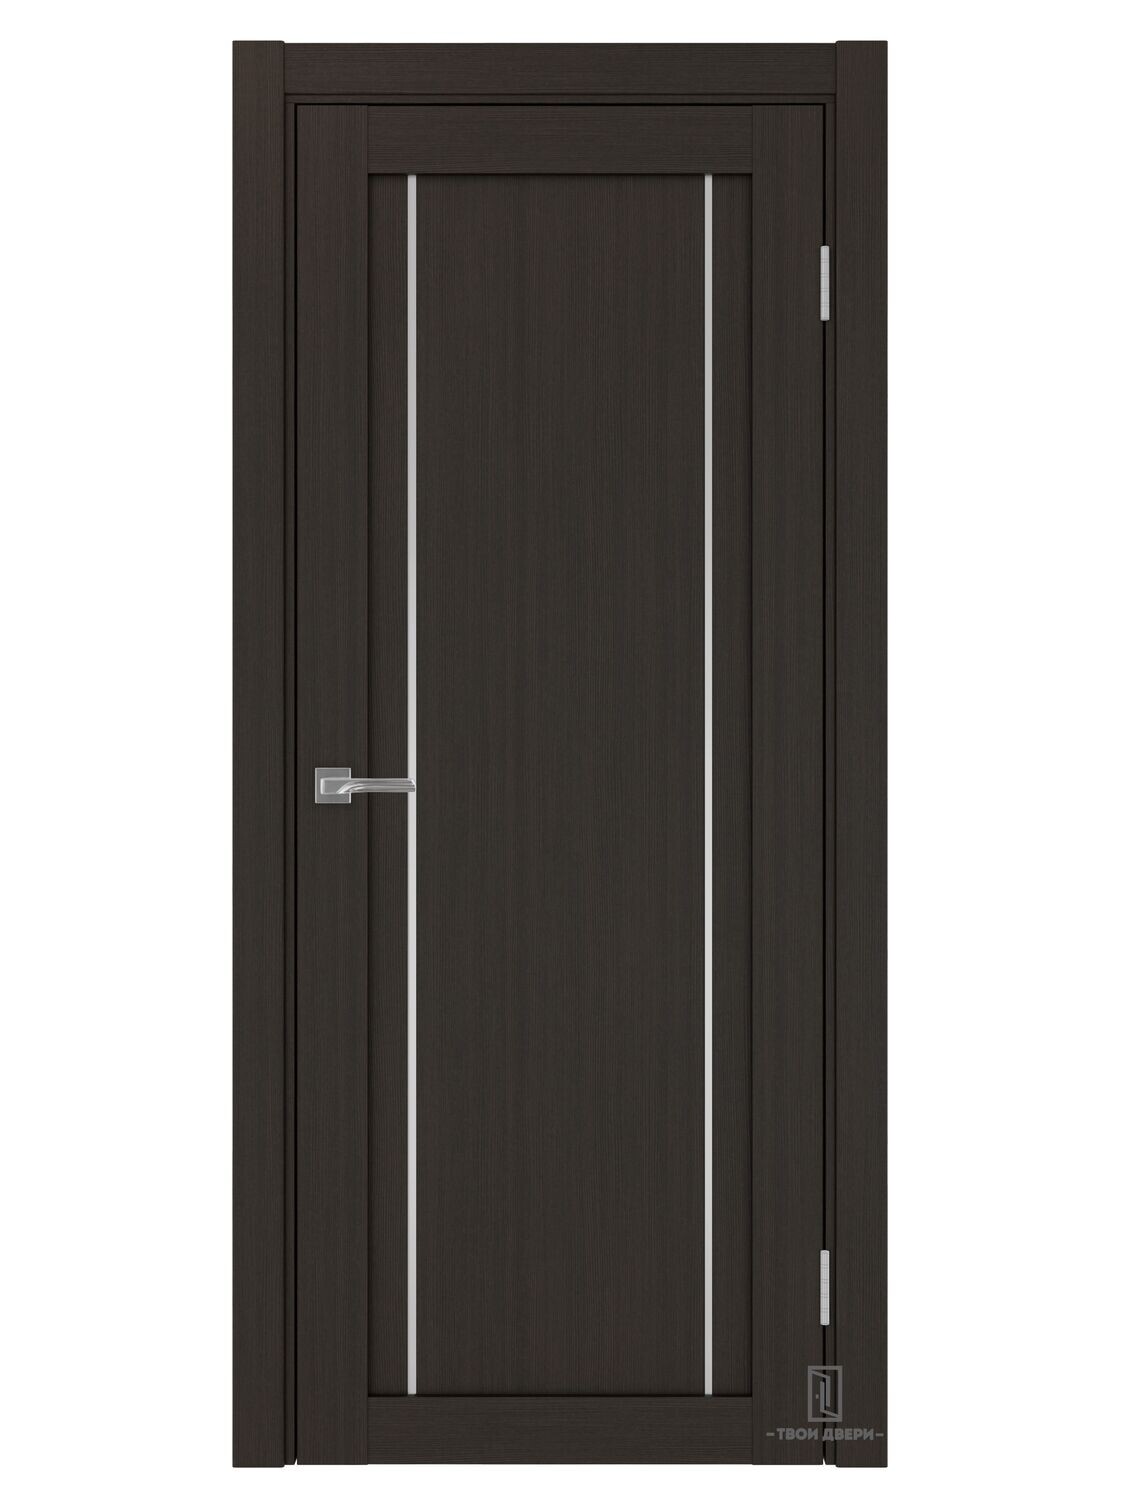 Дверь межкомнатная АПП 522.111 (молдинги), венге, Ширина полотна, мм: 600